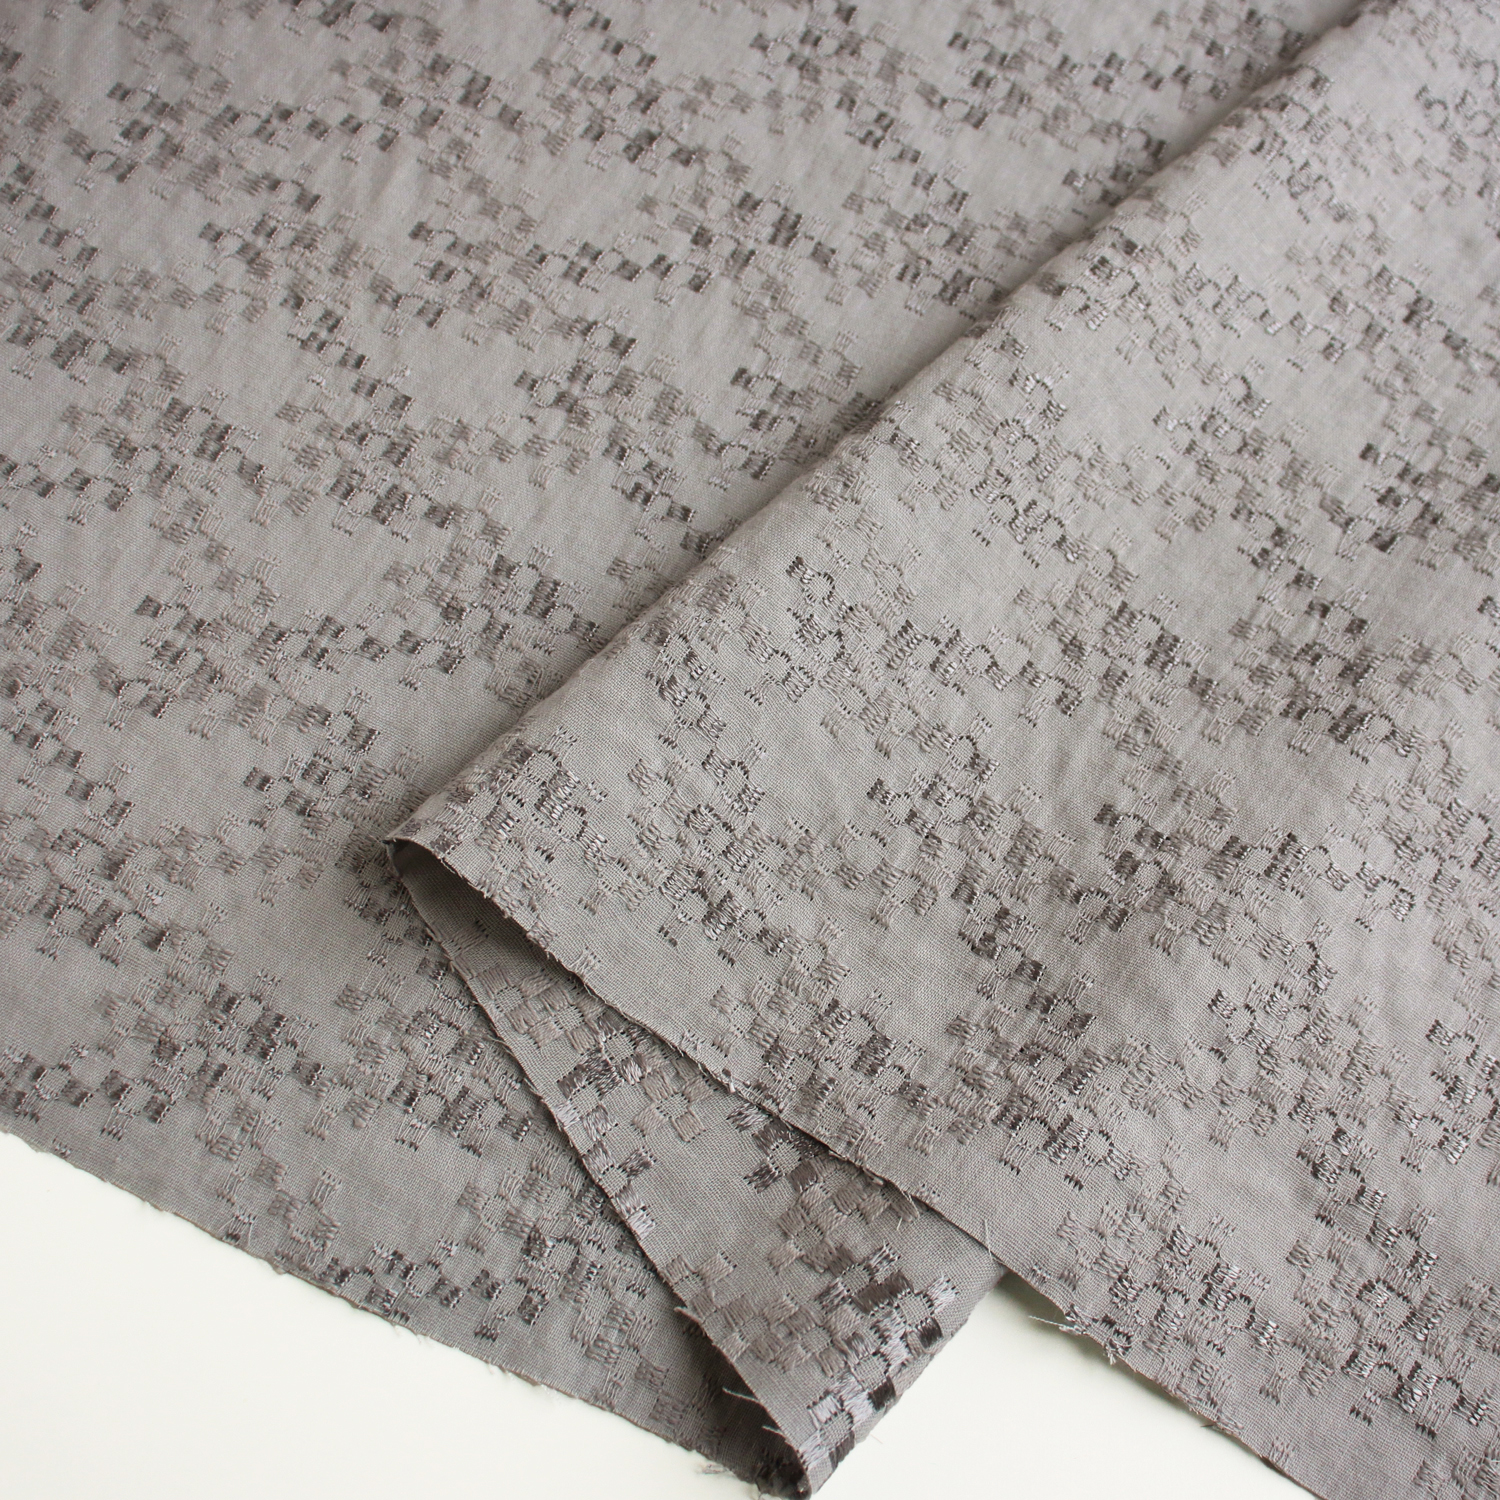 AL566-5095 cotton lace fabric, Width 100cm, 1m/unit (m)